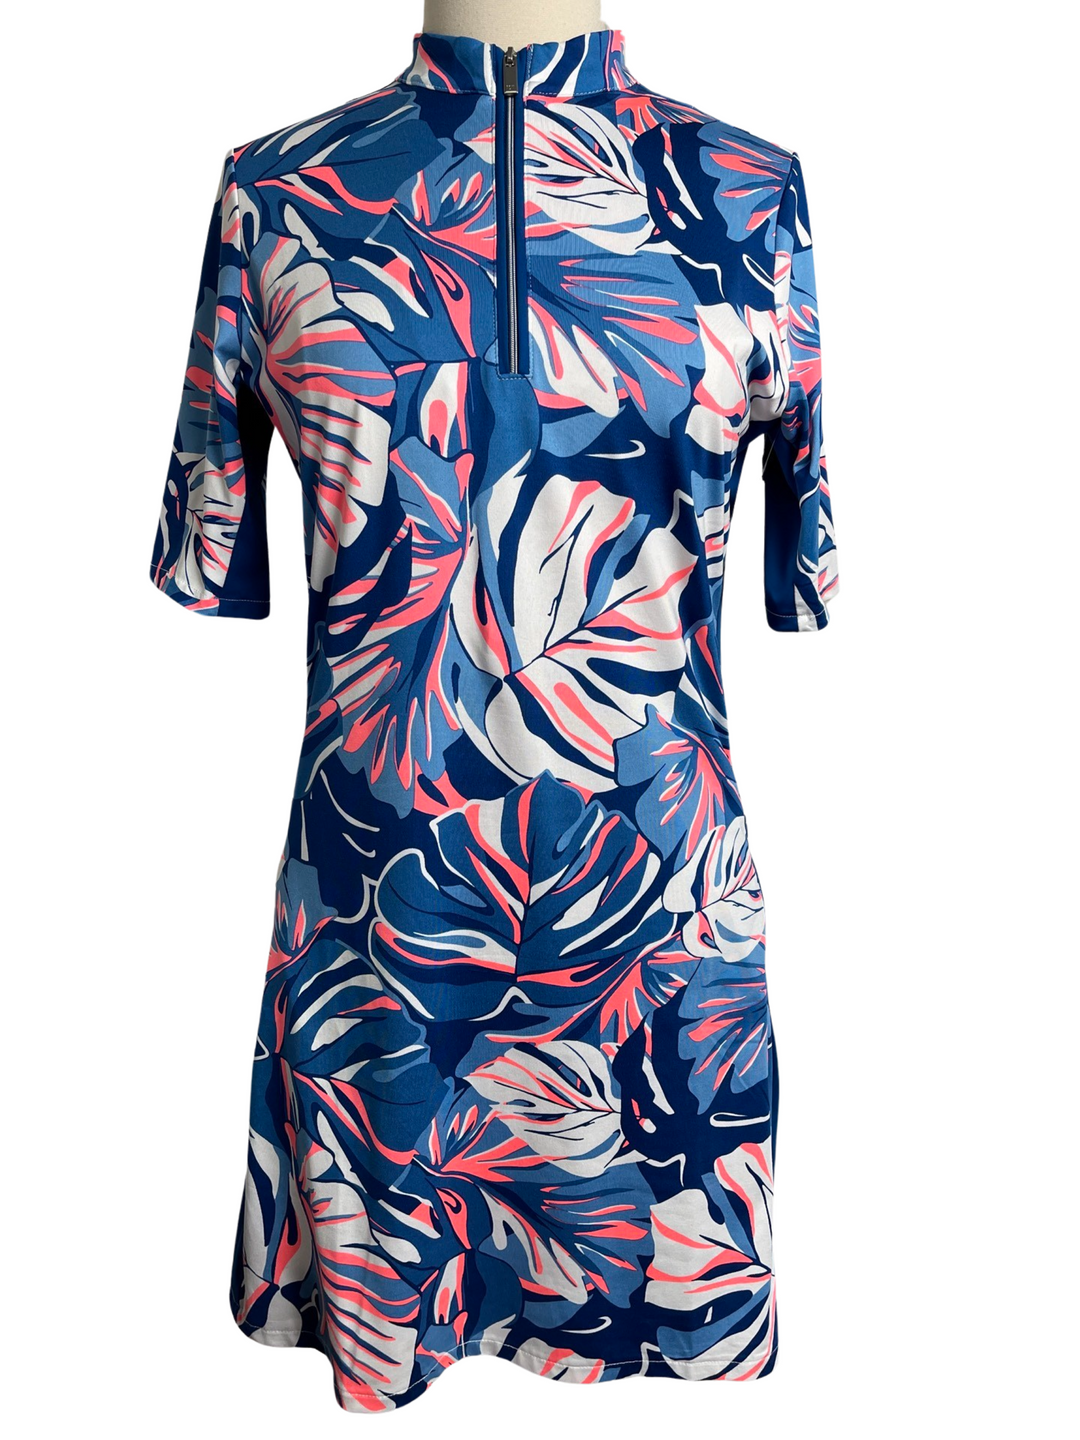 Tail Blue Tropics 3/4 Sleeve Dress - Medium - Skorzie